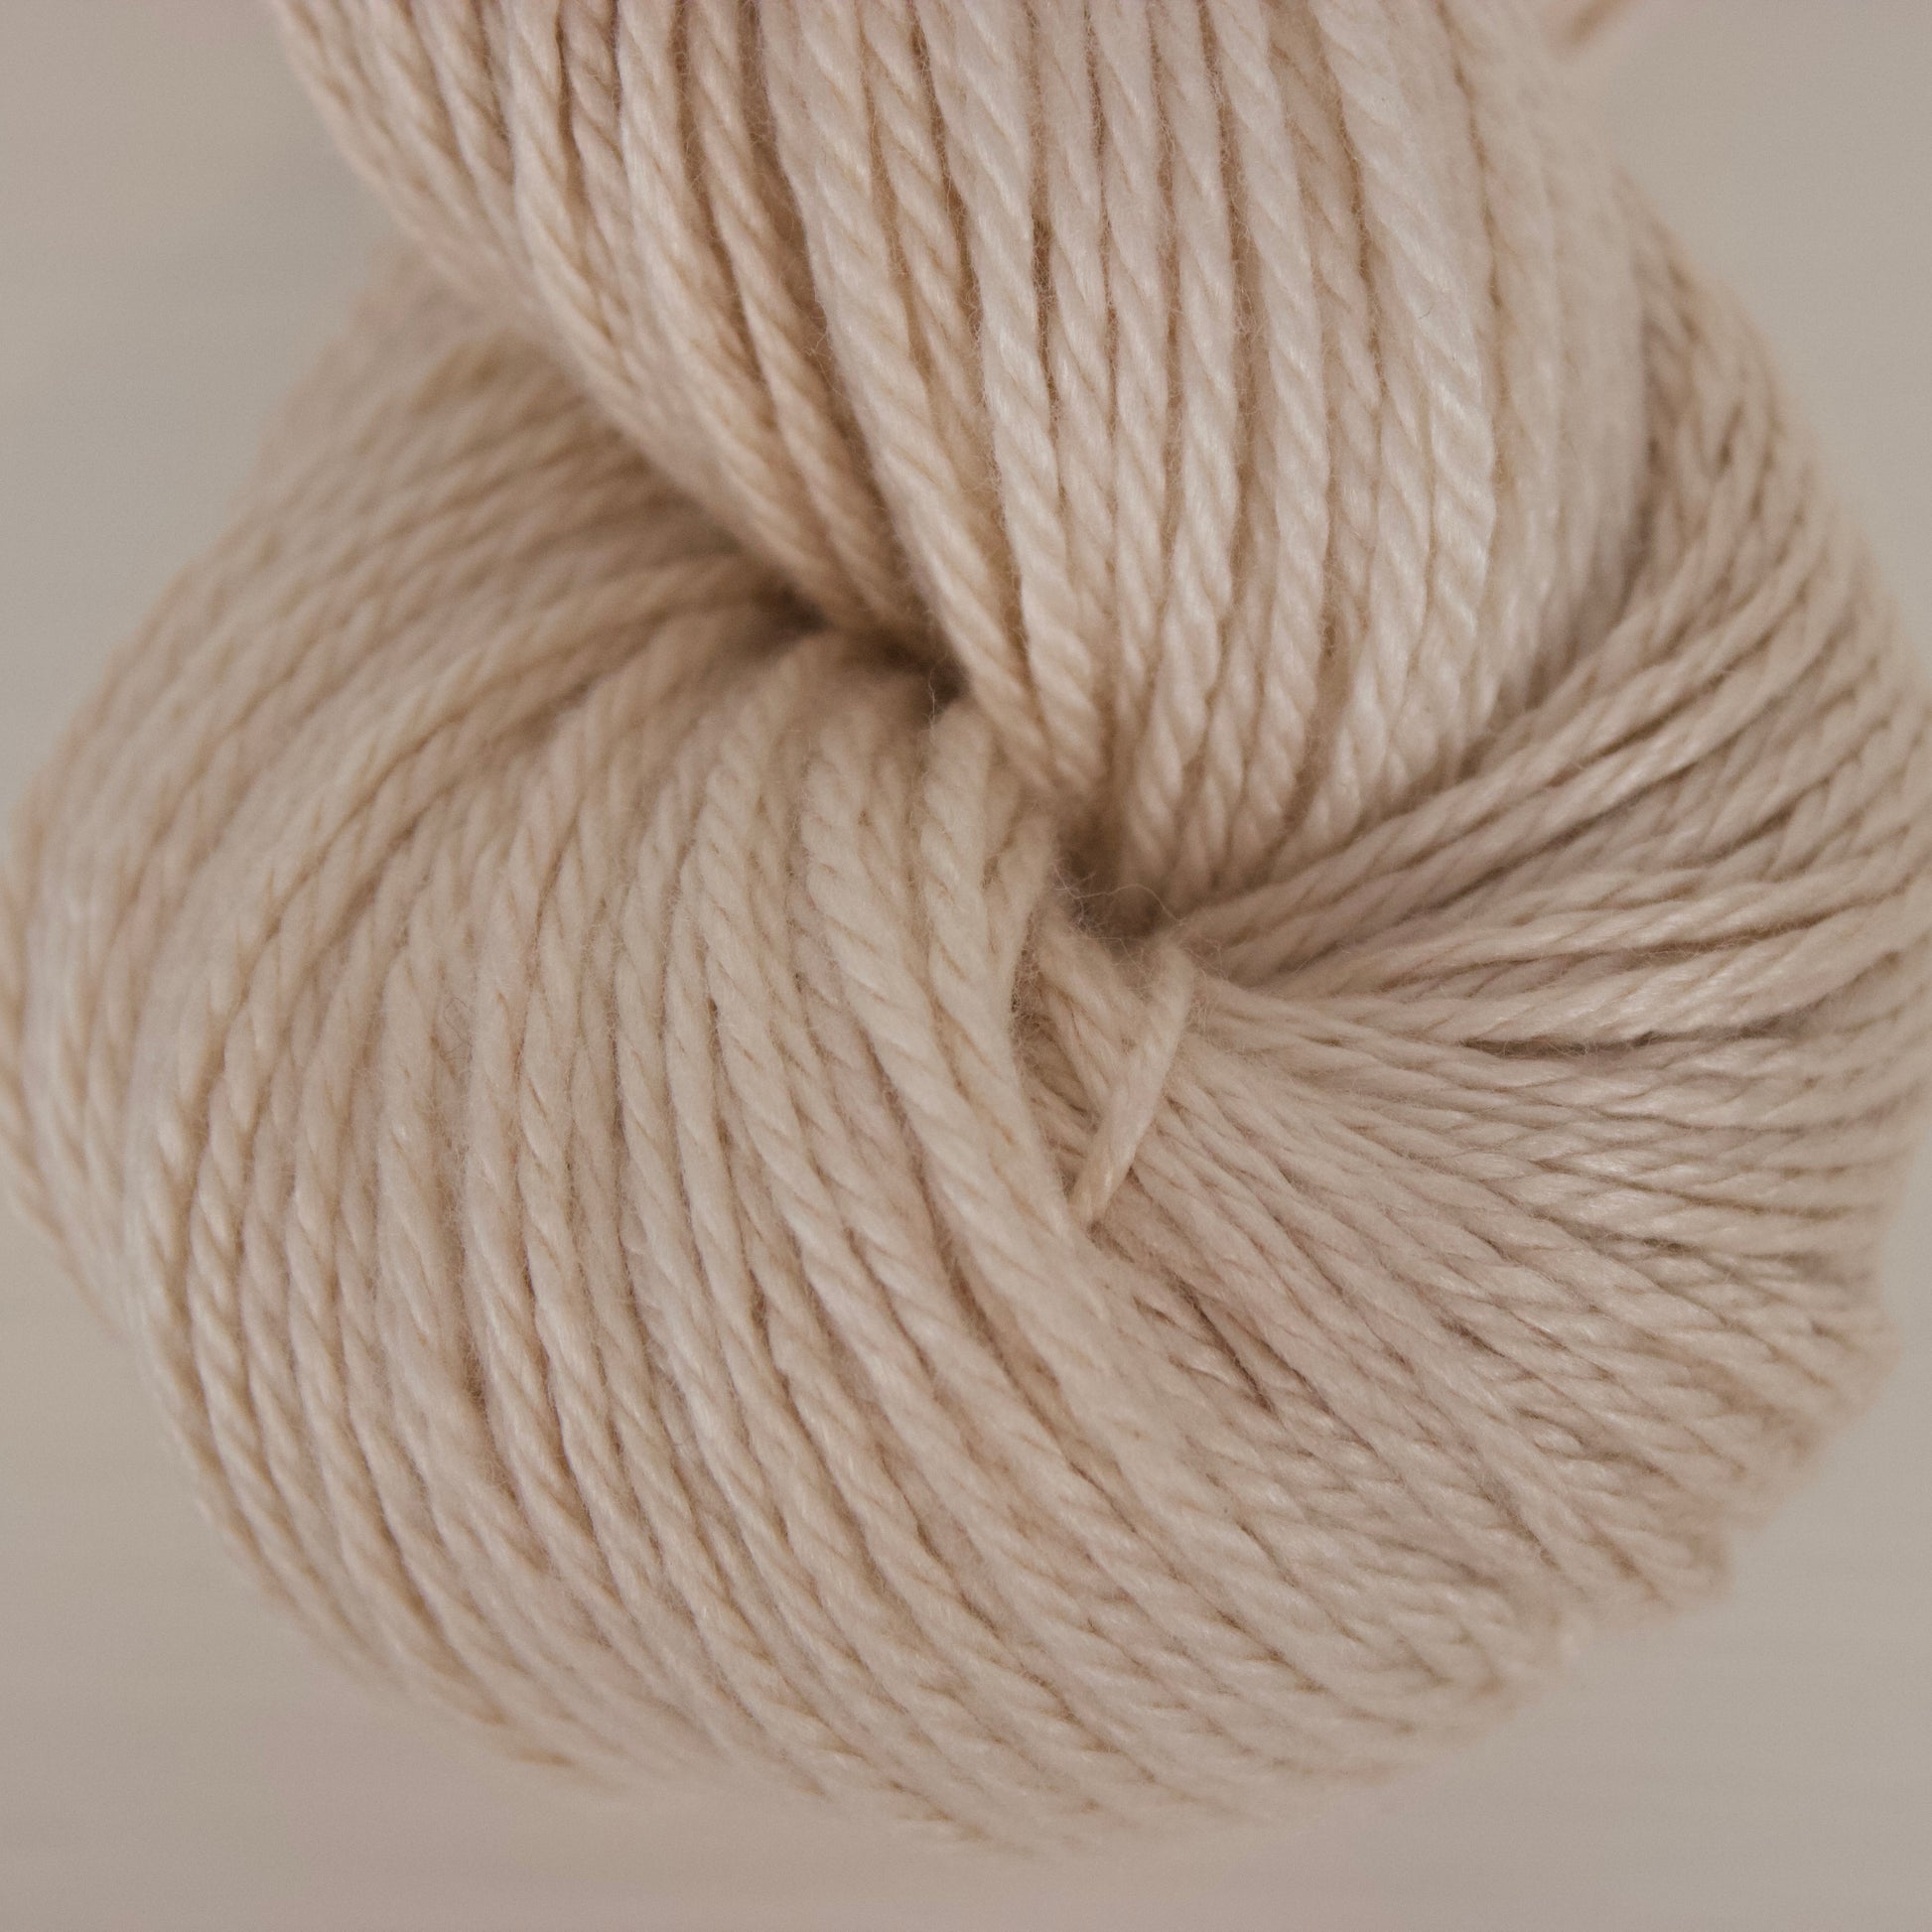 Mylk Tea Colourway - Creamy pale beige with a light variegation like swirls of soy milk in a cup of earl grey.